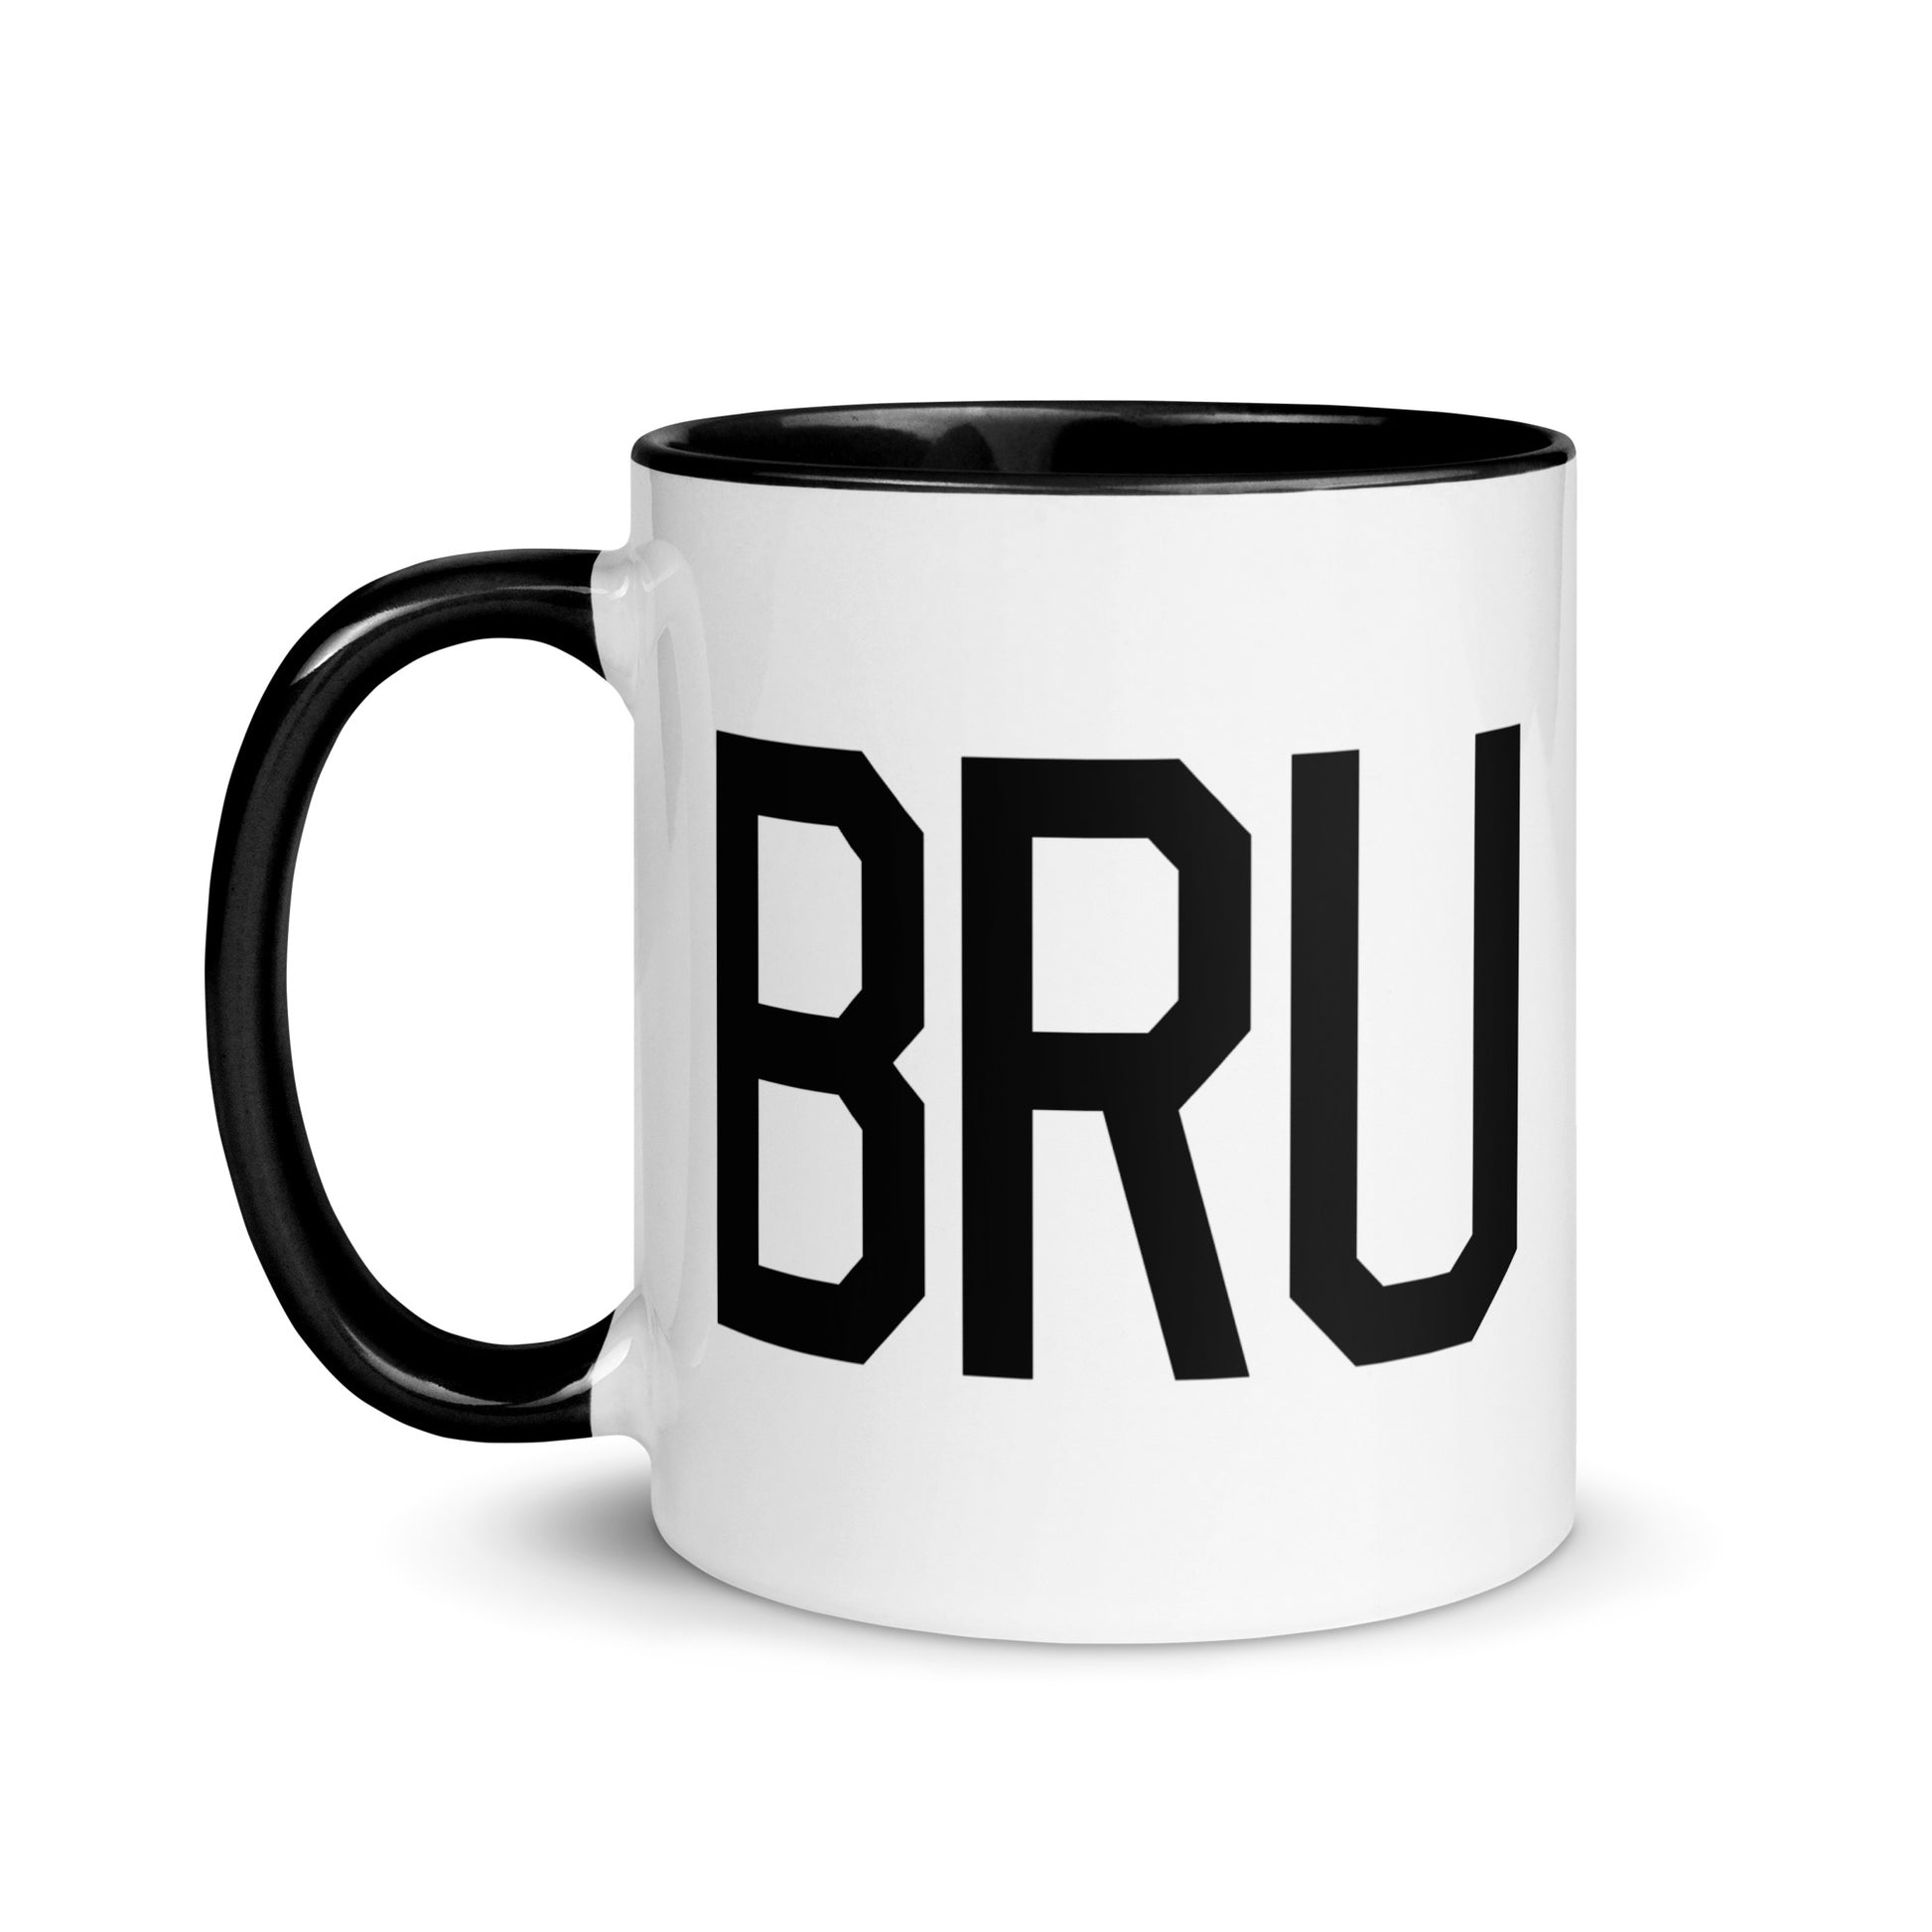 Airport Code Coffee Mug - Black • BRU Brussels • YHM Designs - Image 03